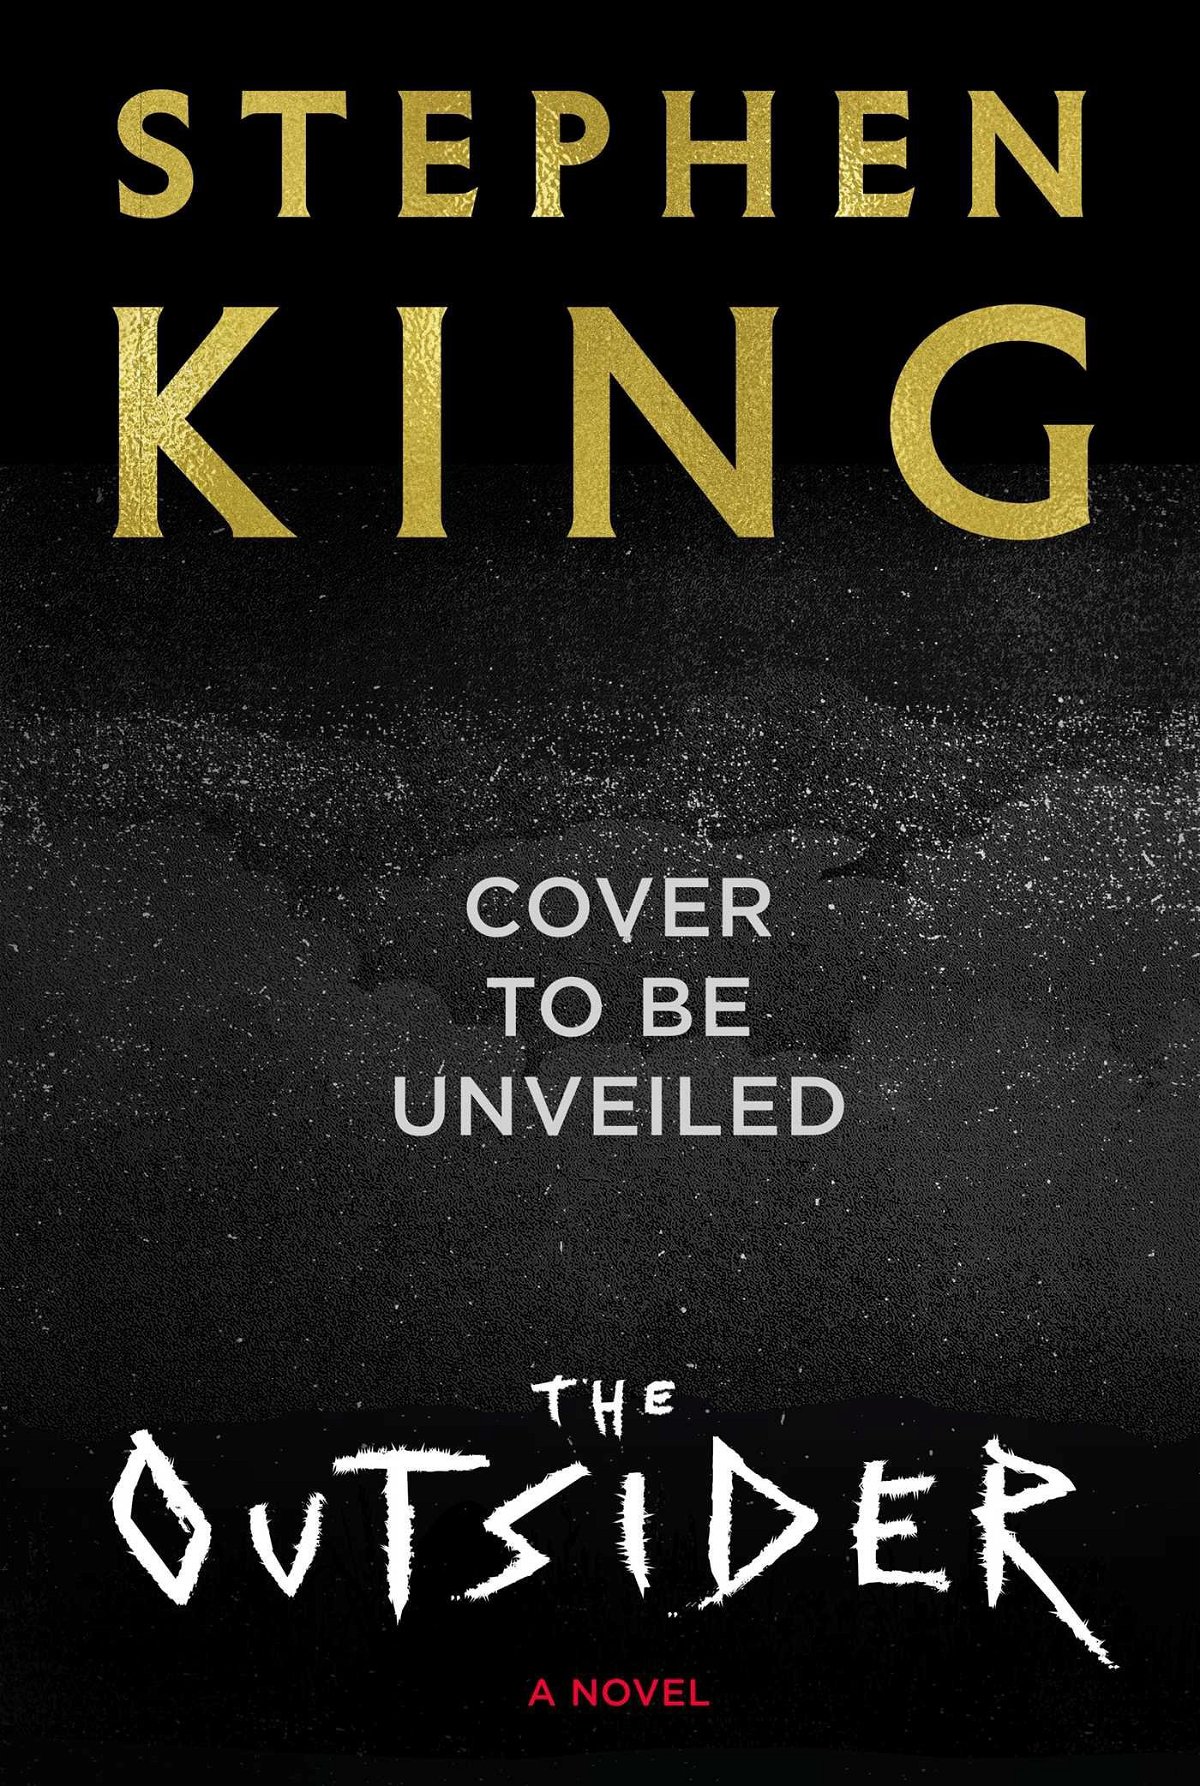 The Outsider di Stephen King, in arrivo a maggio 2018